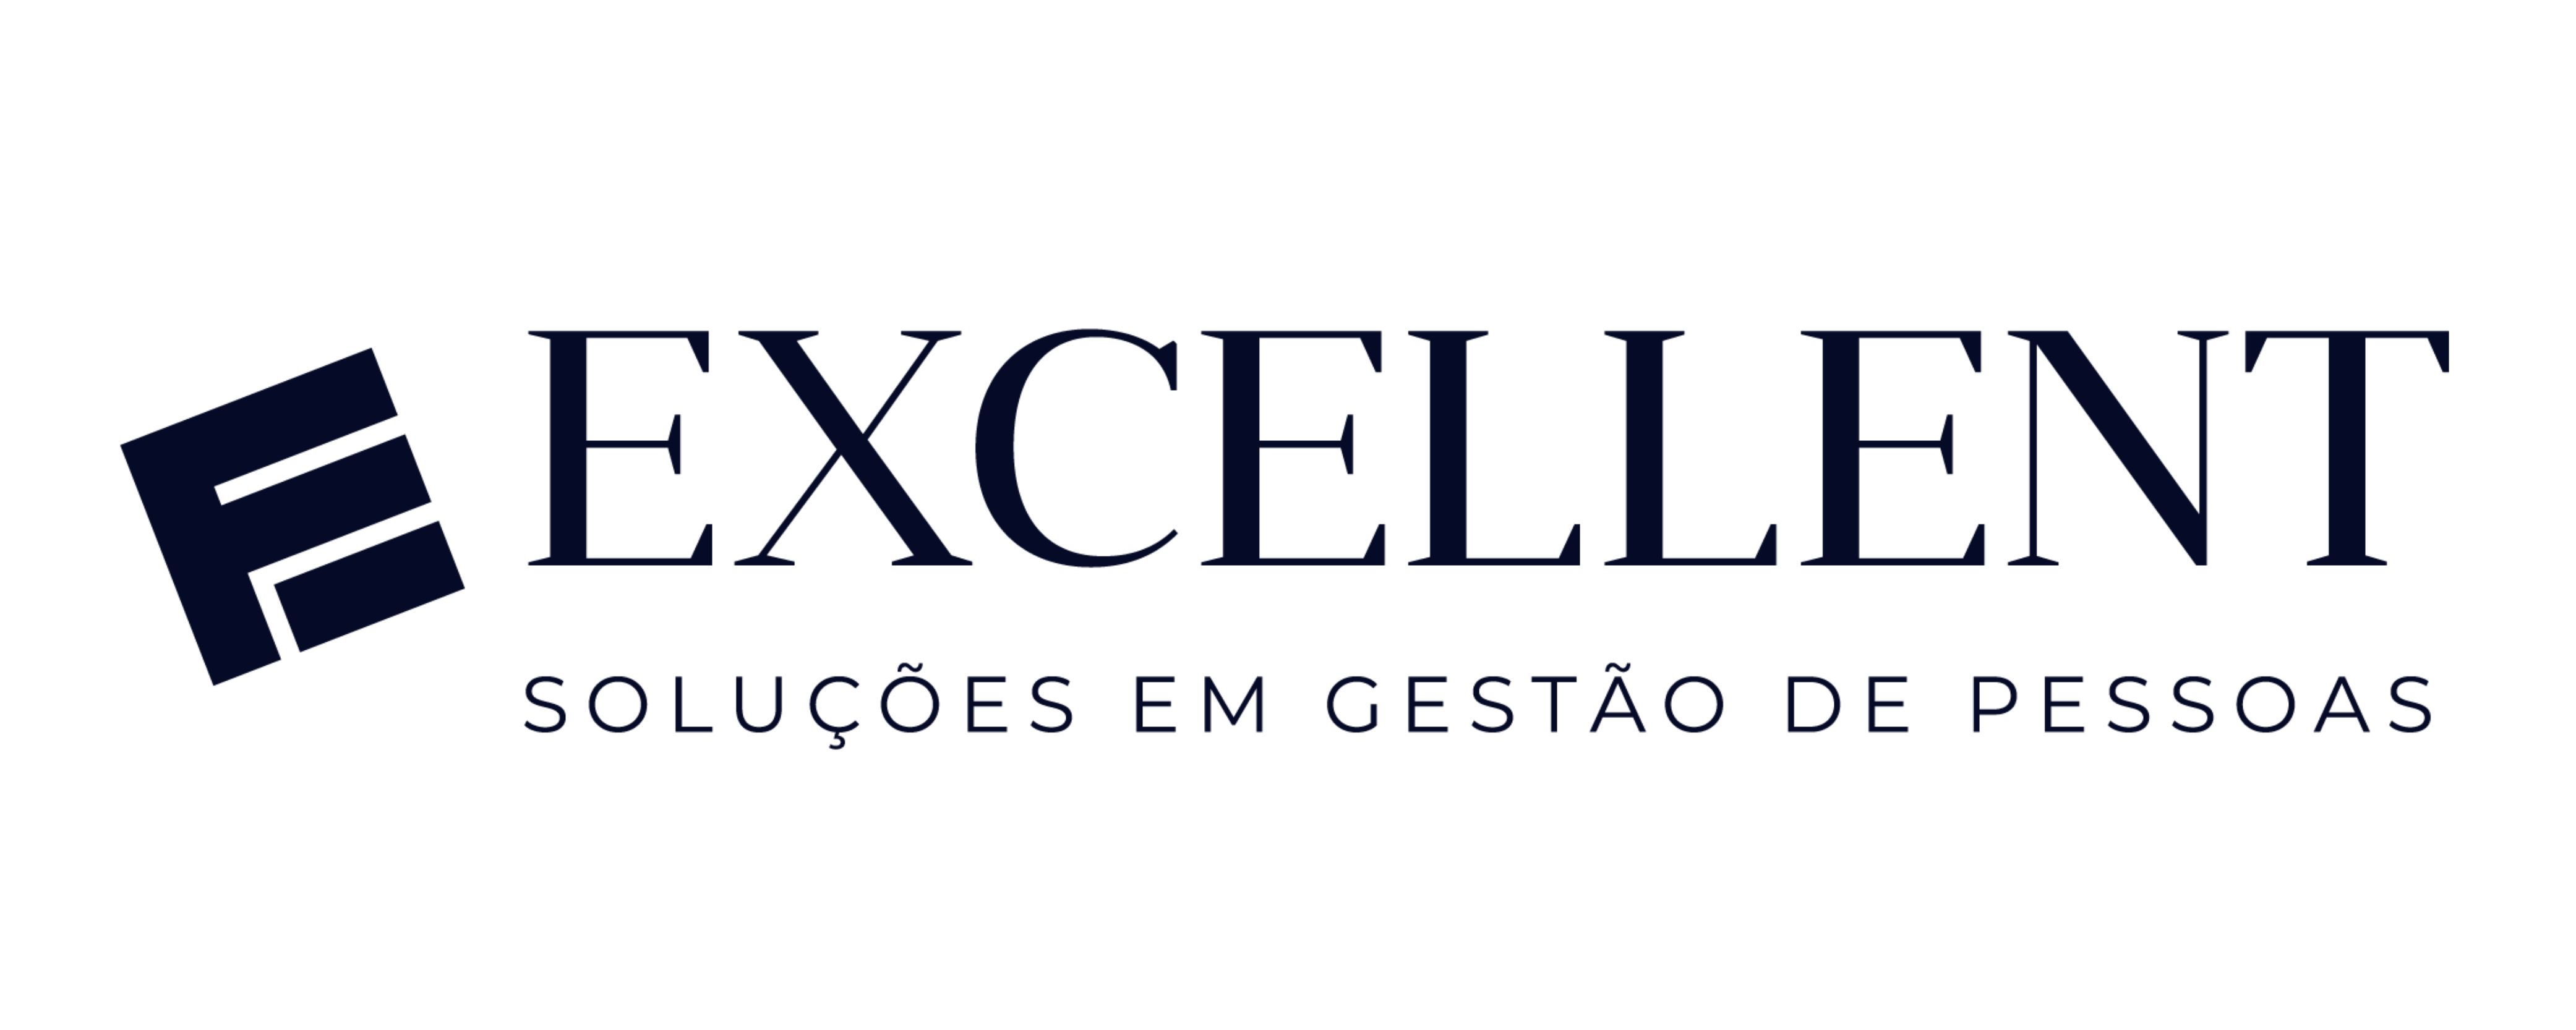 Logo-Excellent-01